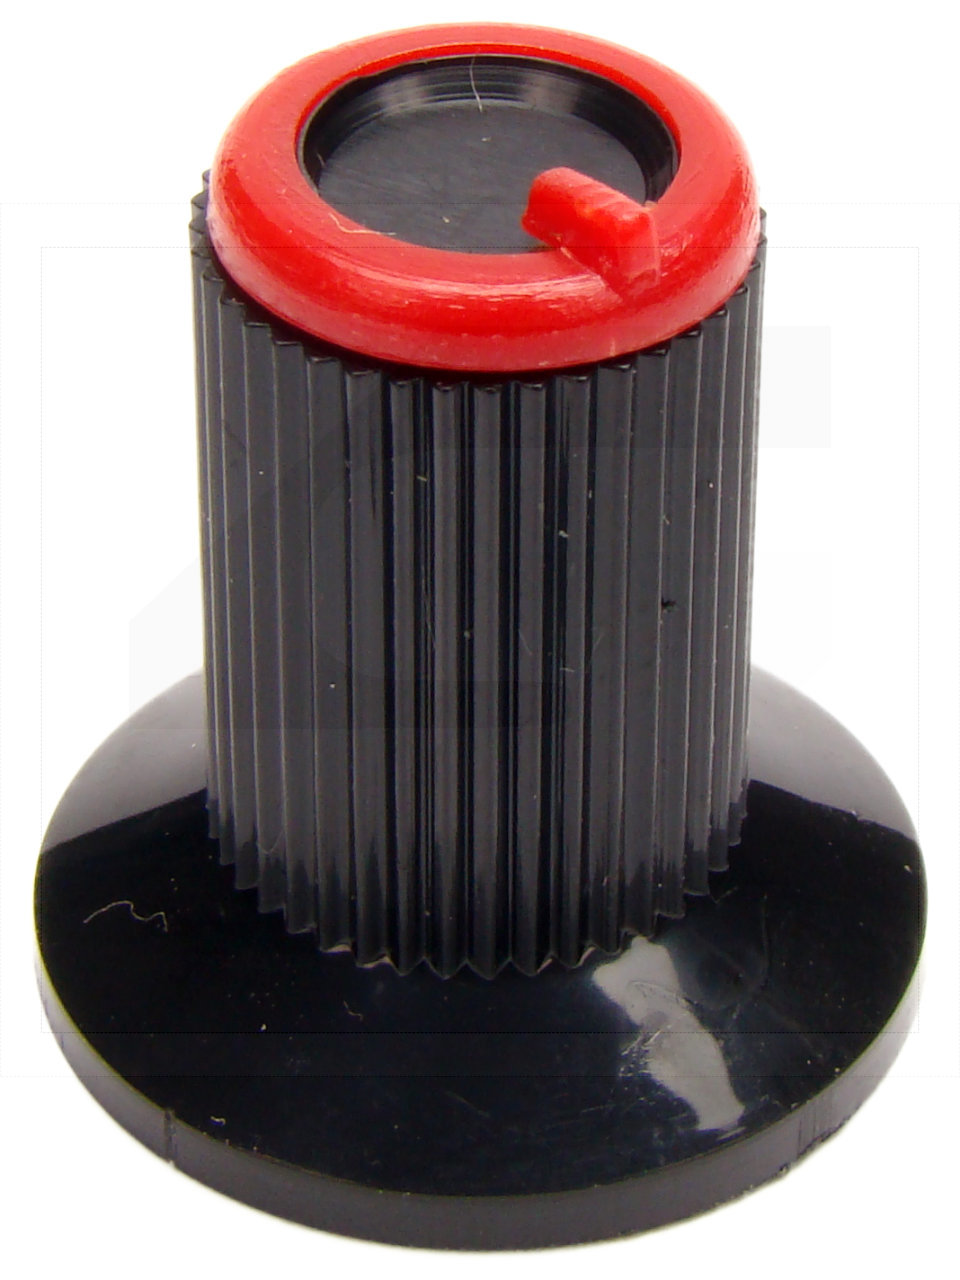 Pokrętło N-0 znacznik czerwony; średnica osi 6mm;fi 18/11mm;w.19mm;